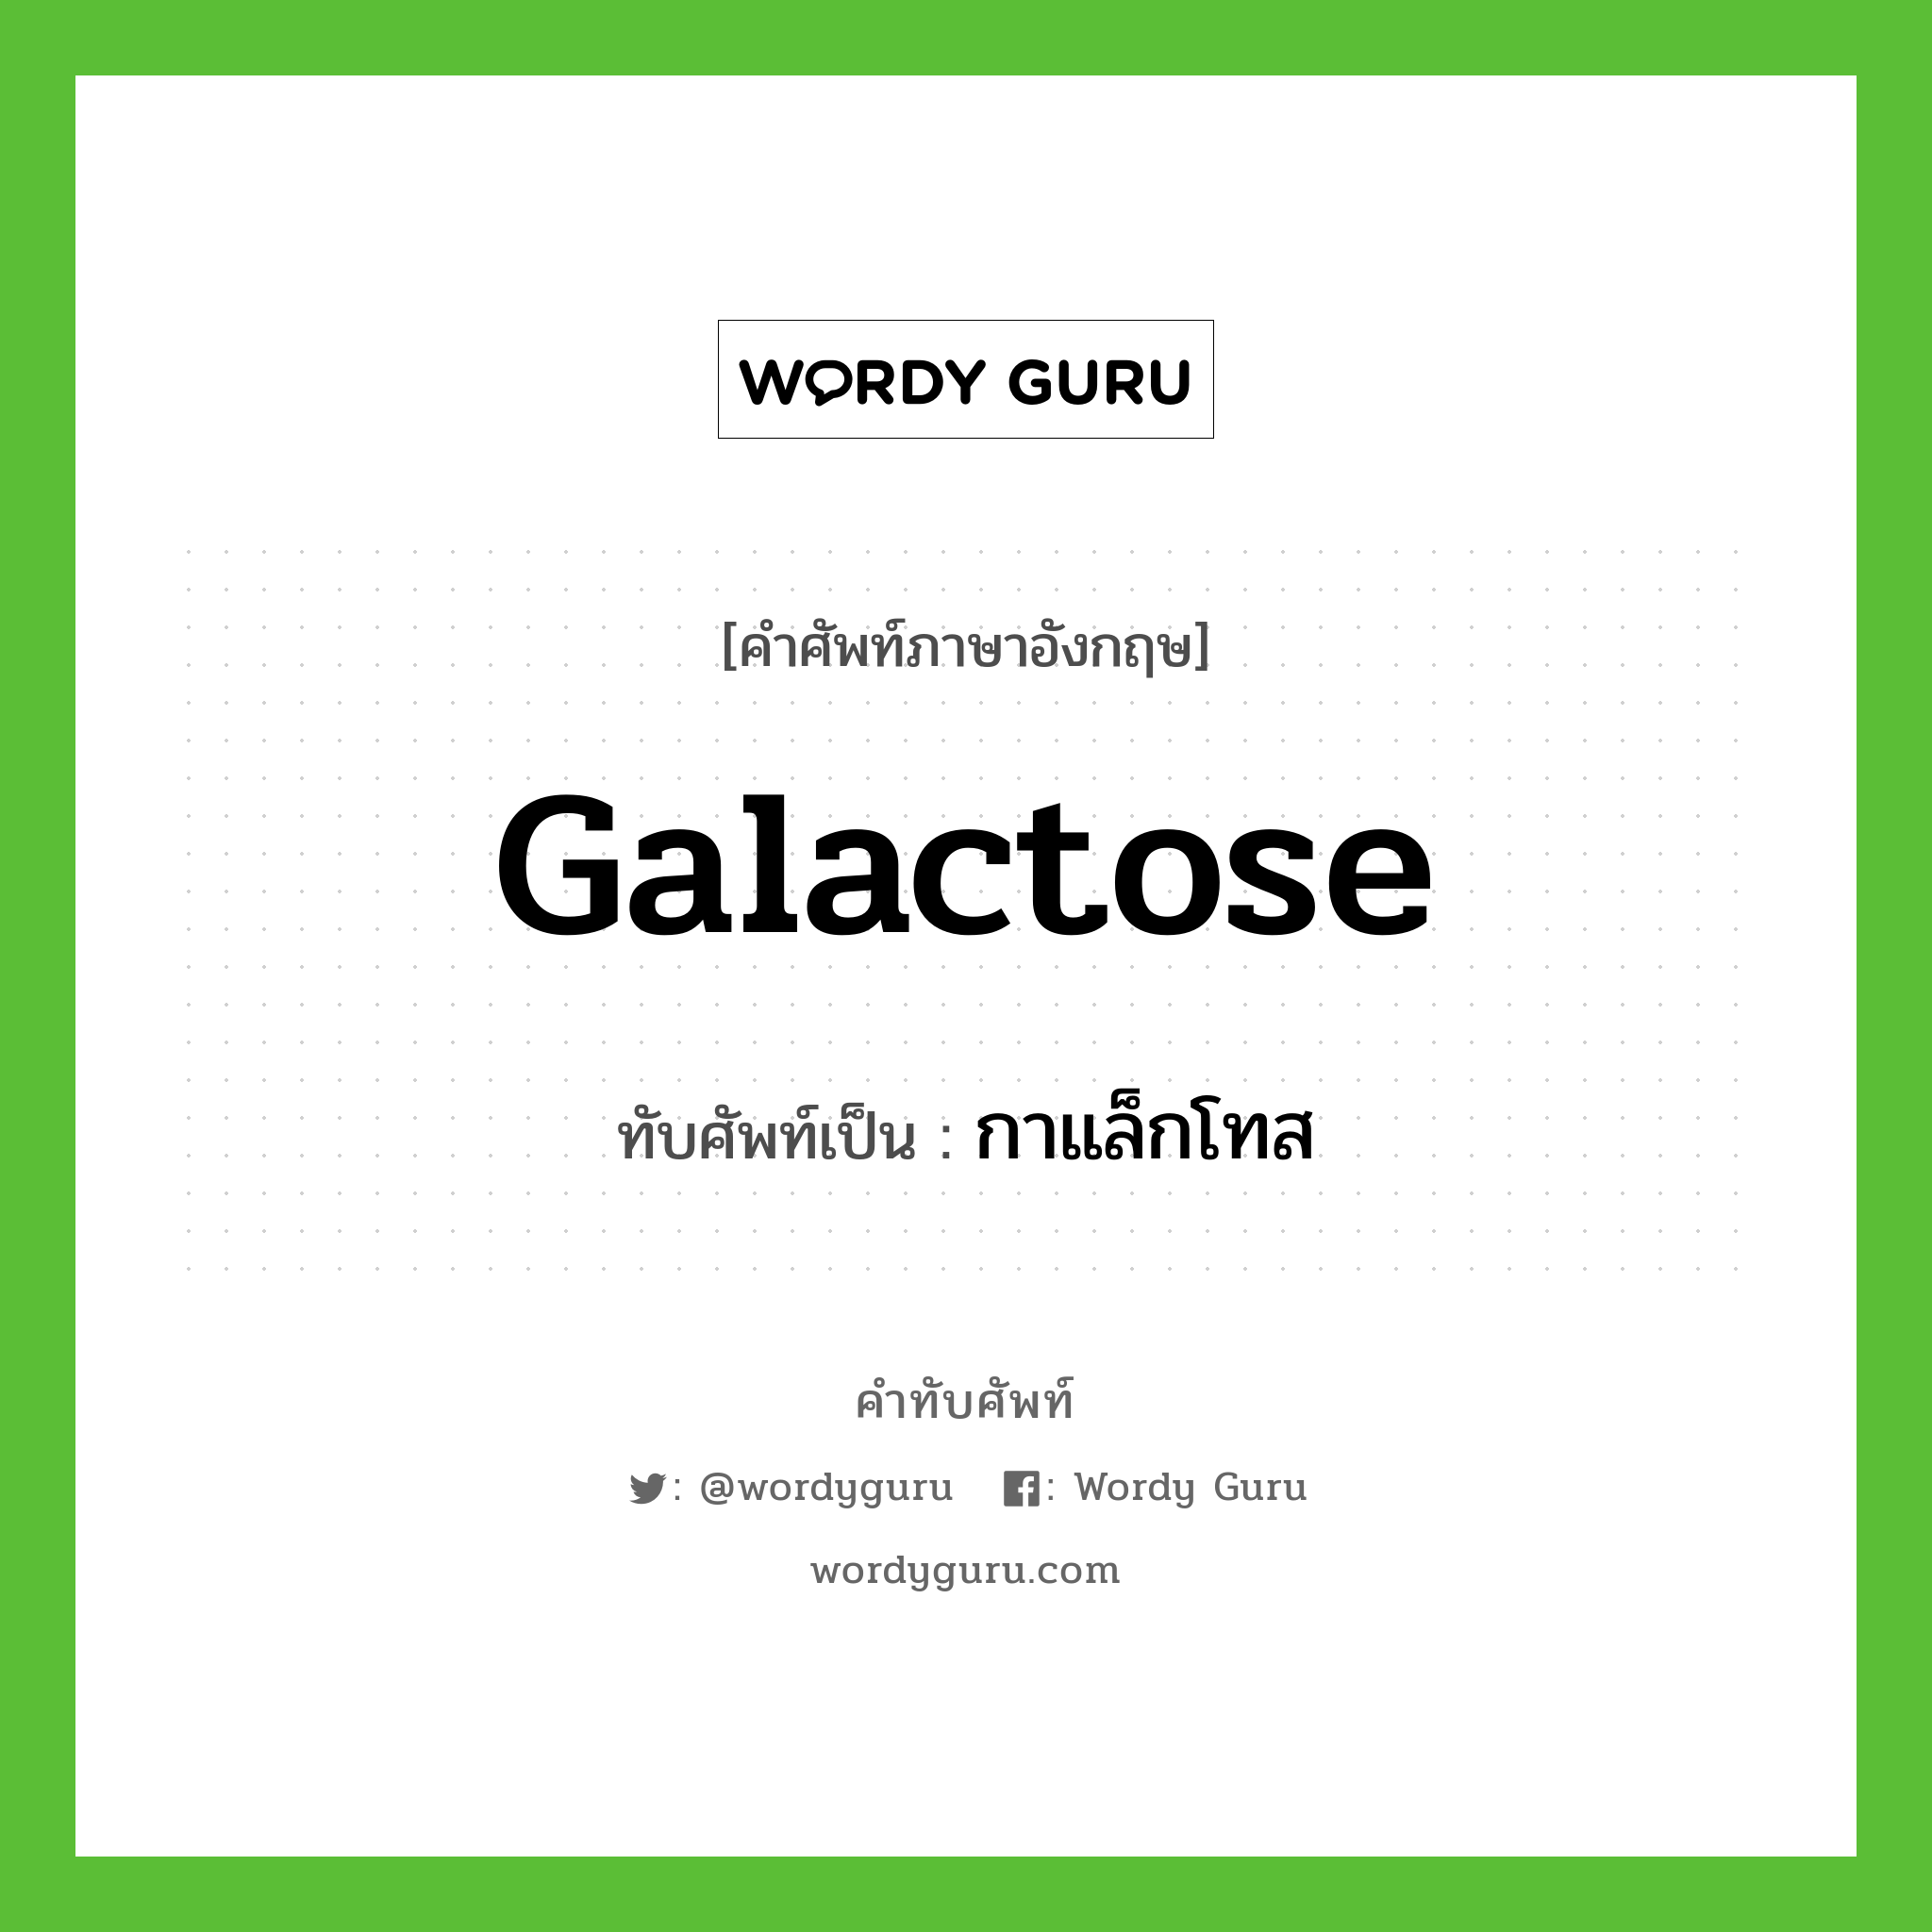 galactose เขียนเป็นคำไทยว่าอะไร?, คำศัพท์ภาษาอังกฤษ galactose ทับศัพท์เป็น กาแล็กโทส